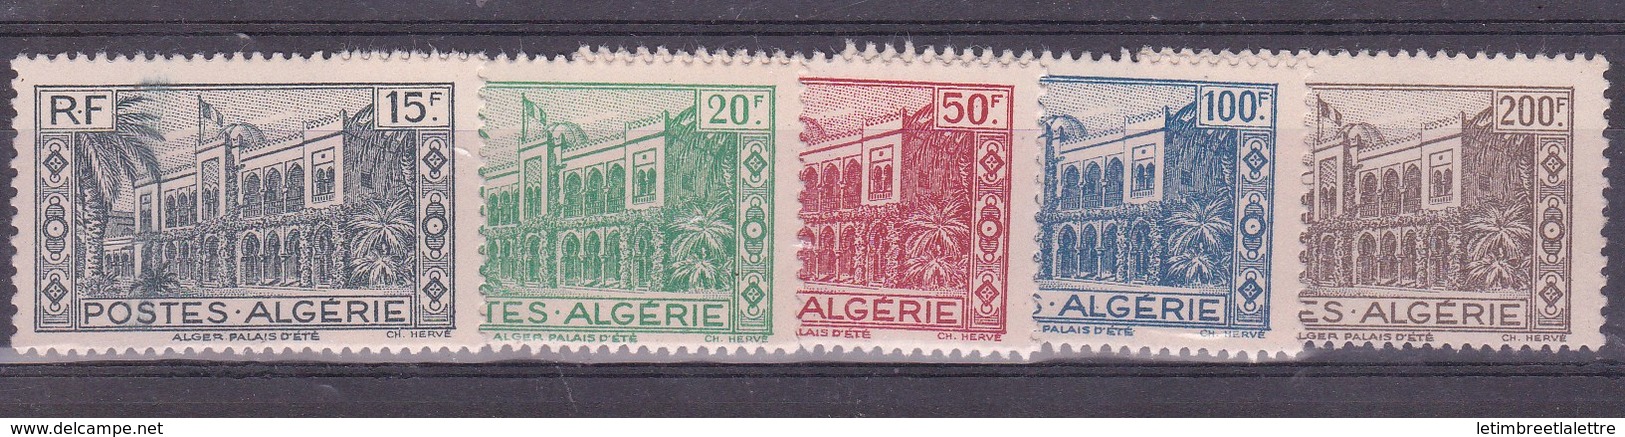 ⭐ Algérie - YT N° 200 à 204 ** - Neuf Sans Charnière - 1944 ⭐ - Ongebruikt